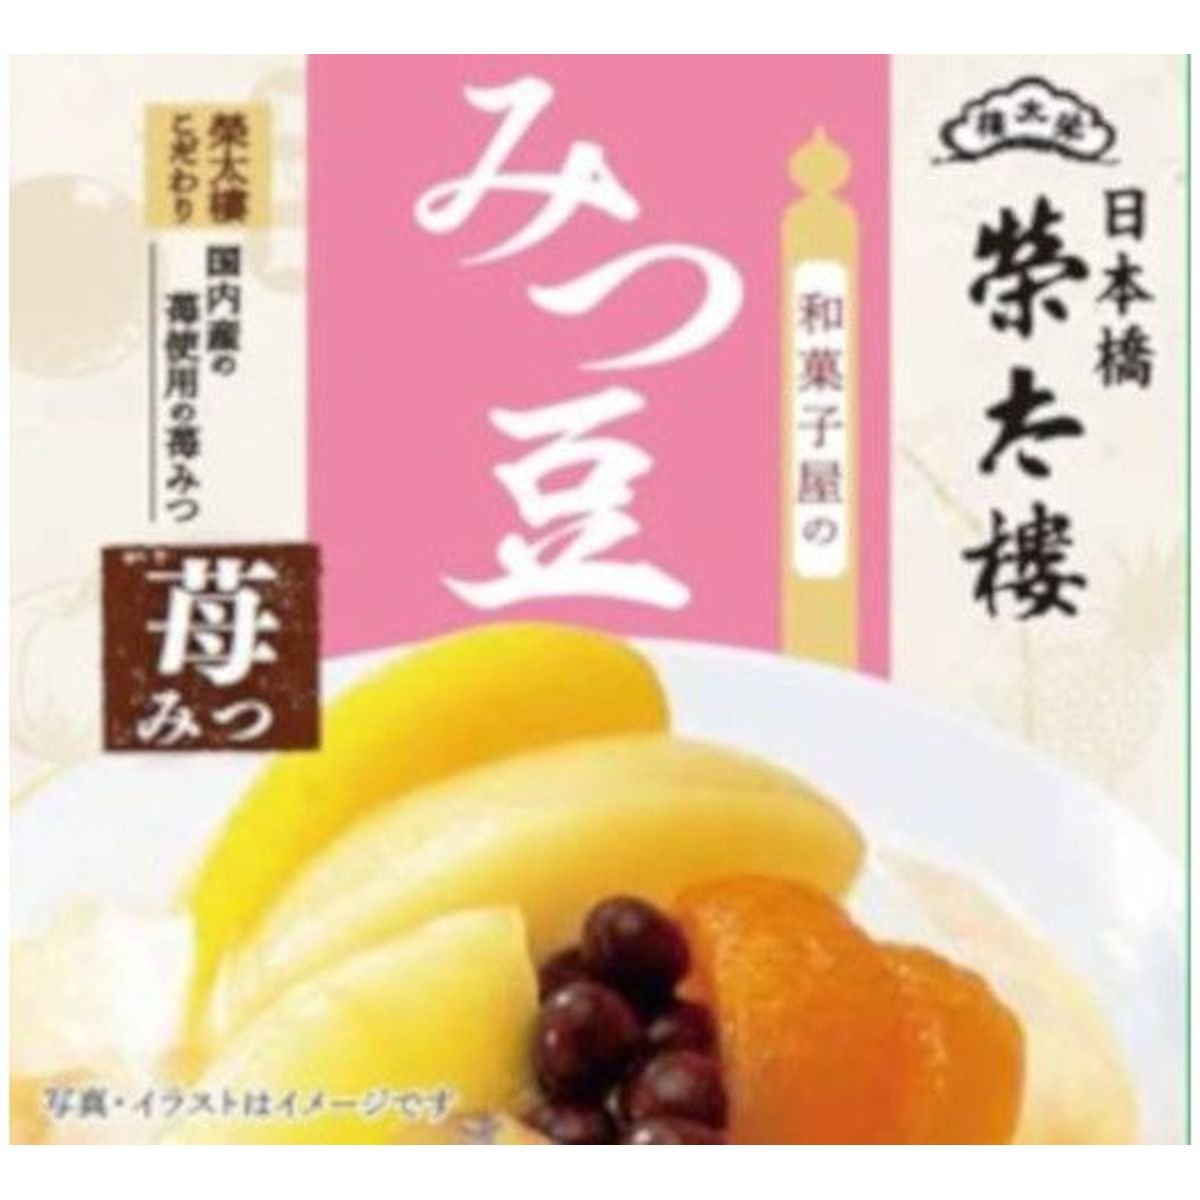 【6個入リ】榮太樓 和菓子屋ノミツ豆苺ミツ 225g